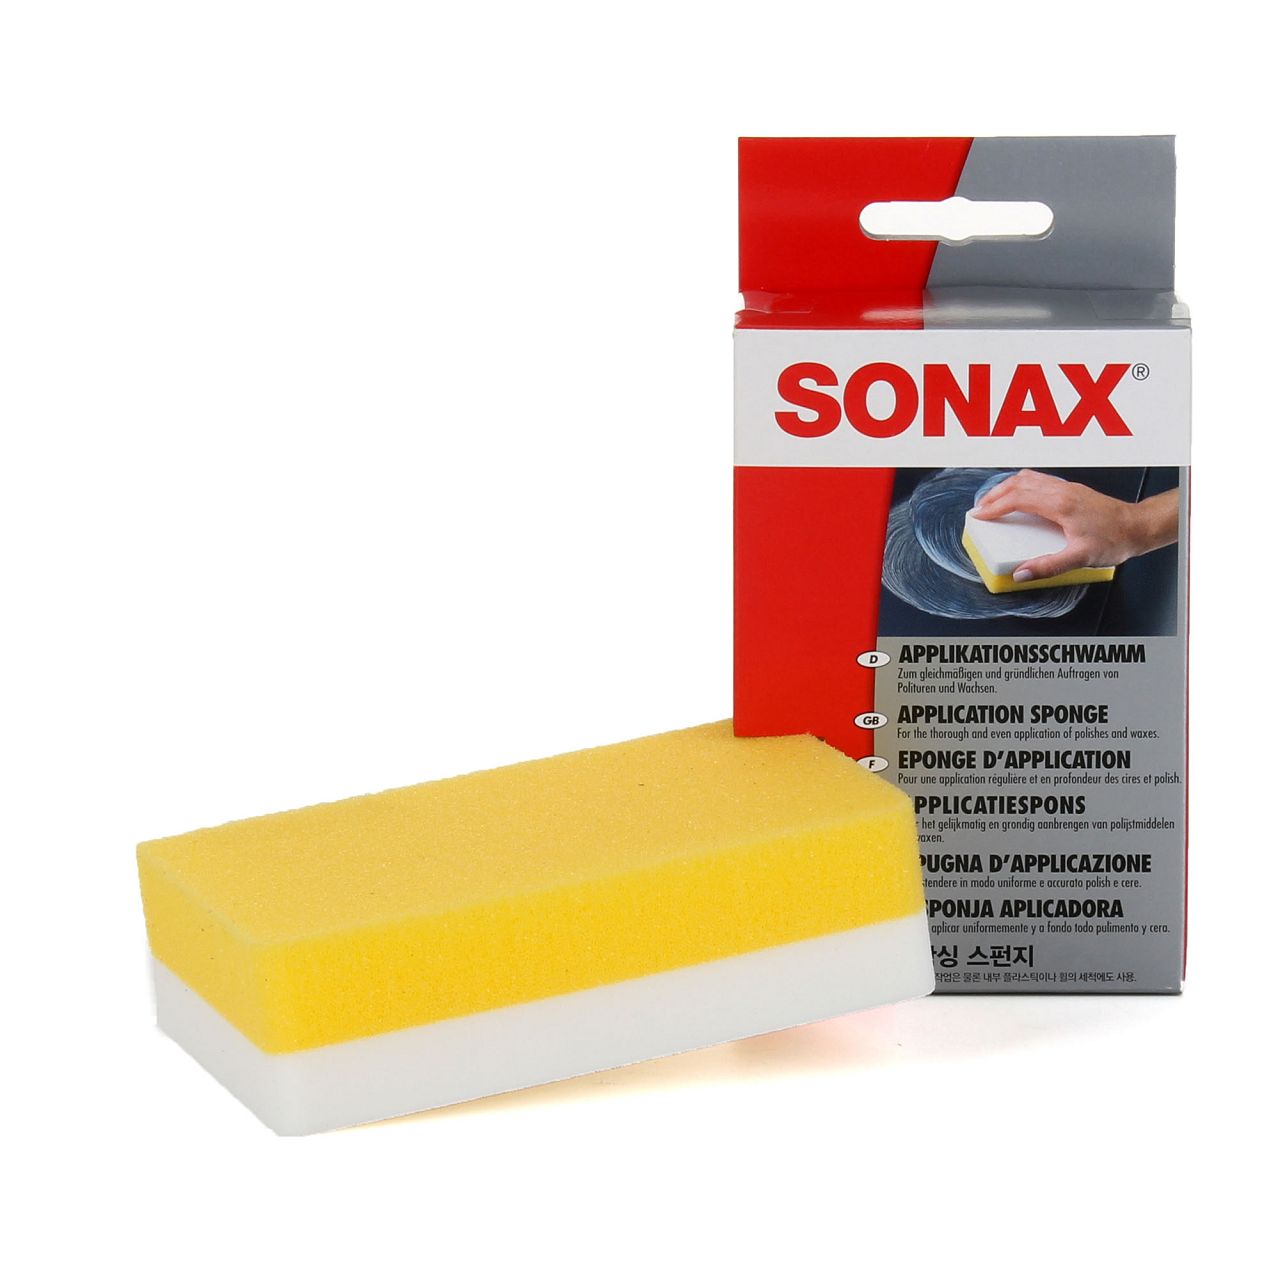 SONAX ApplikationsSchwamm Schwamm Reinigung 1 Stück 417300 - ws